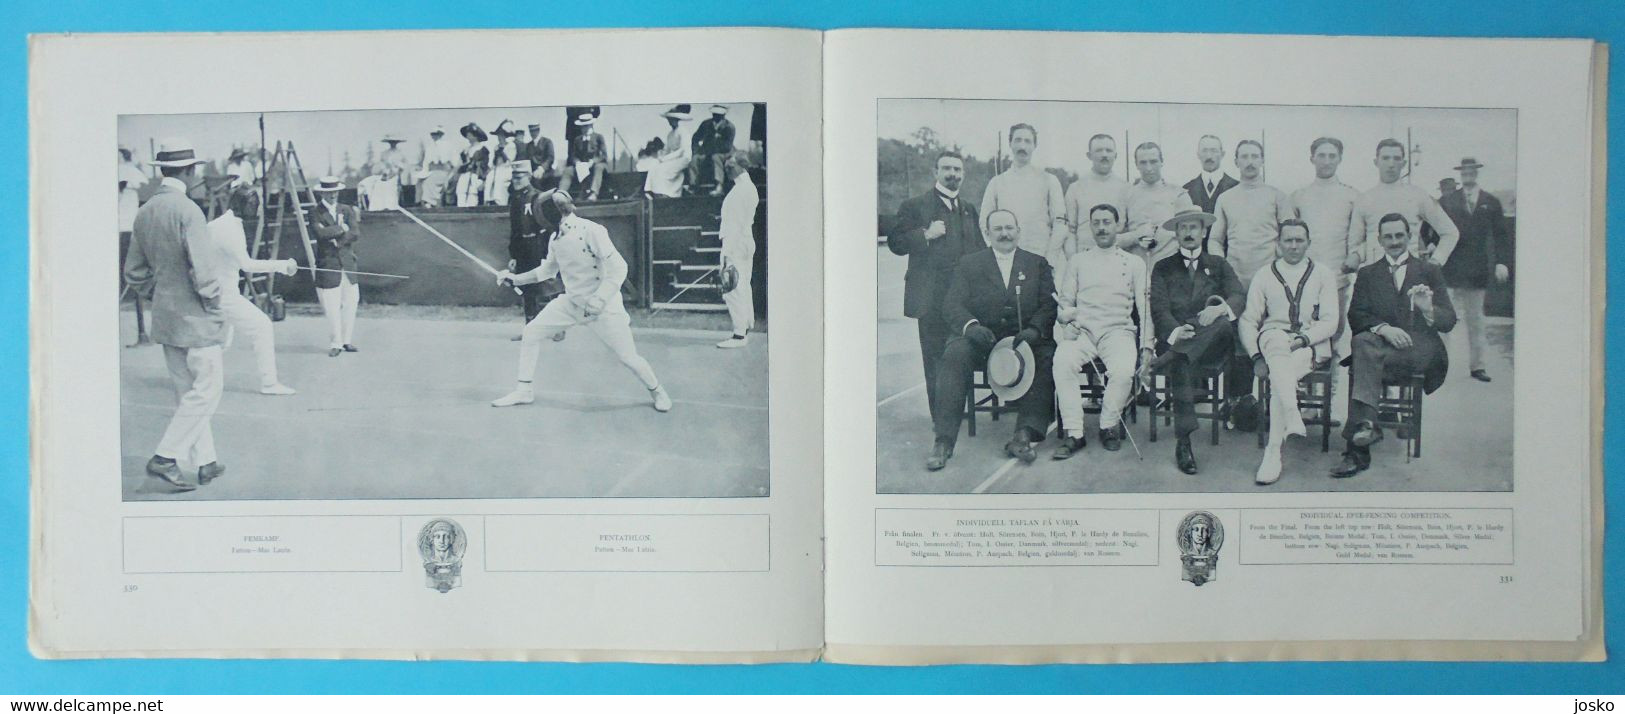 OLYMPIC GAMES STOCKHOLM 1912 - FENCING (Belgium - Belgie is winner) - original vintage programme escrime fechten scherma